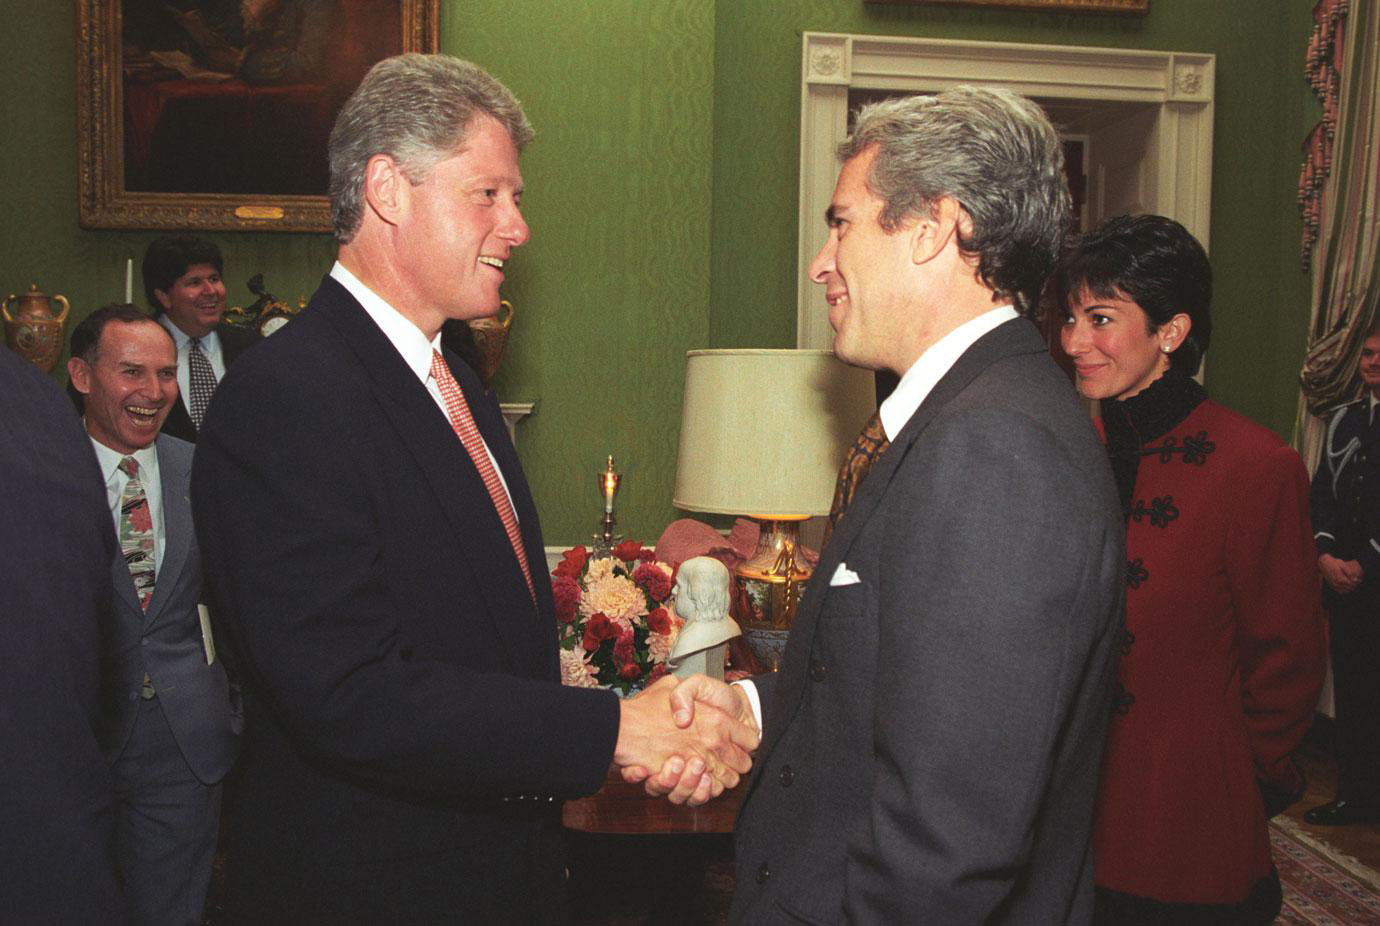 William J. Clinton Başkanlık Kütüphanesi ve Müzesi'ne göre eski ABD Başkanı Bill Clinton, 29 Eylül 1993'te Beyaz Saray'da Jeffrey Epstein ve Ghislaine Maxwell ile fotoğraflandı.